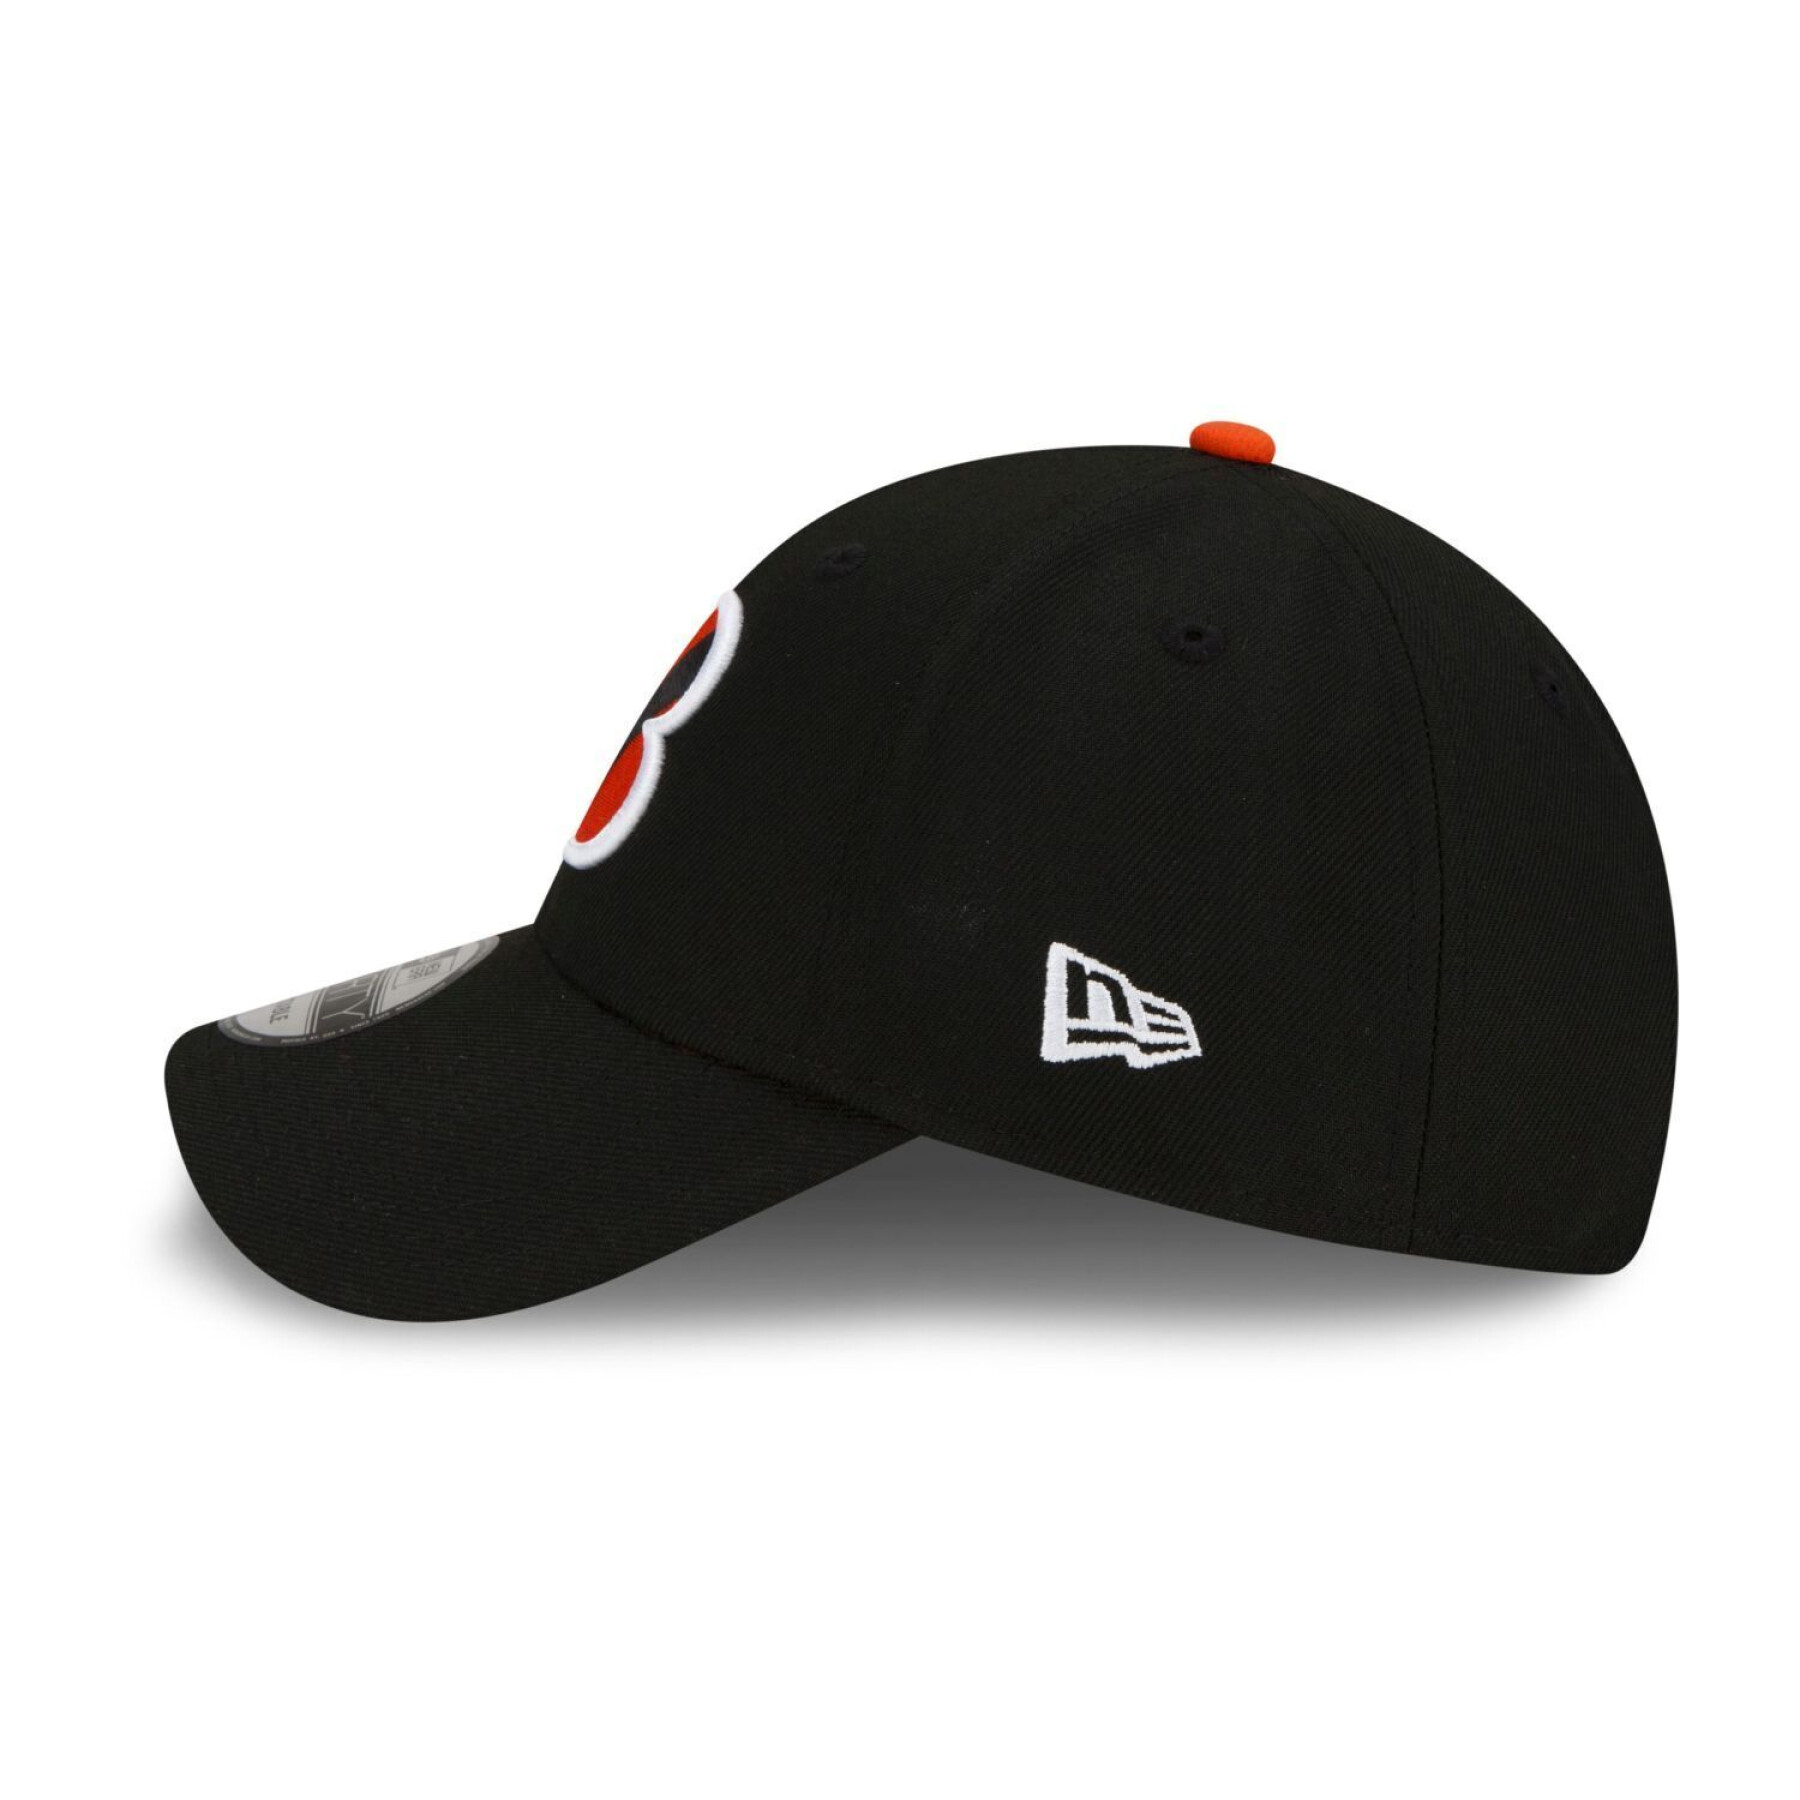 Baseball cap for kids Cincinnati Bengals